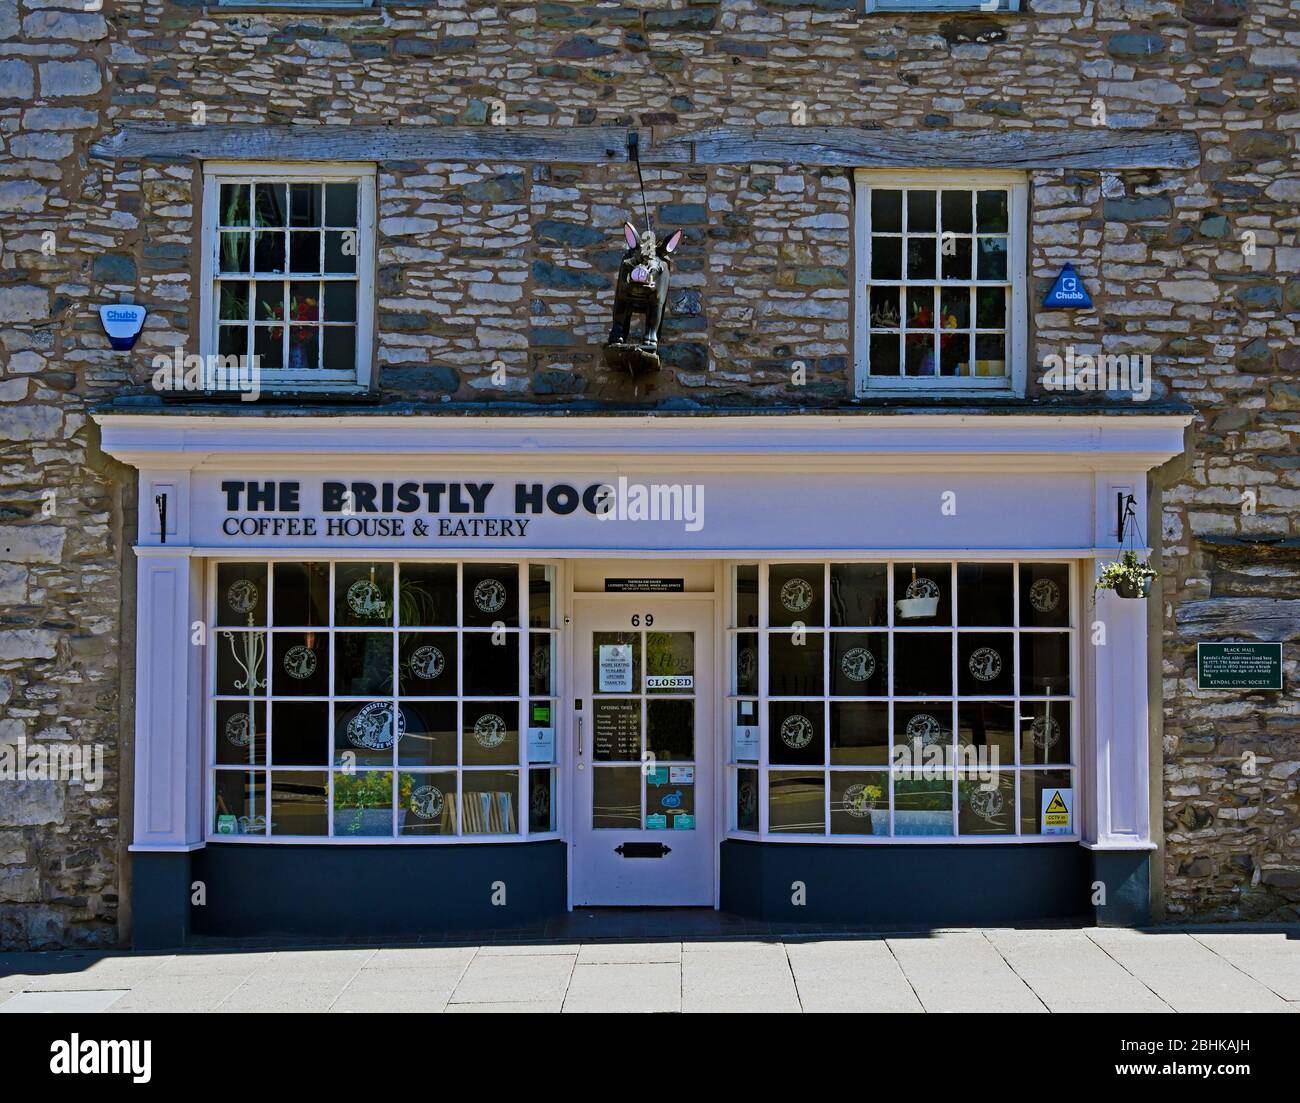 La maison du café et l'Eatery à indice de chaleur. Black Hall, 69 Stricklandgate, Kendal, Cumbria, Angleterre, Royaume-Uni, Europe. Banque D'Images